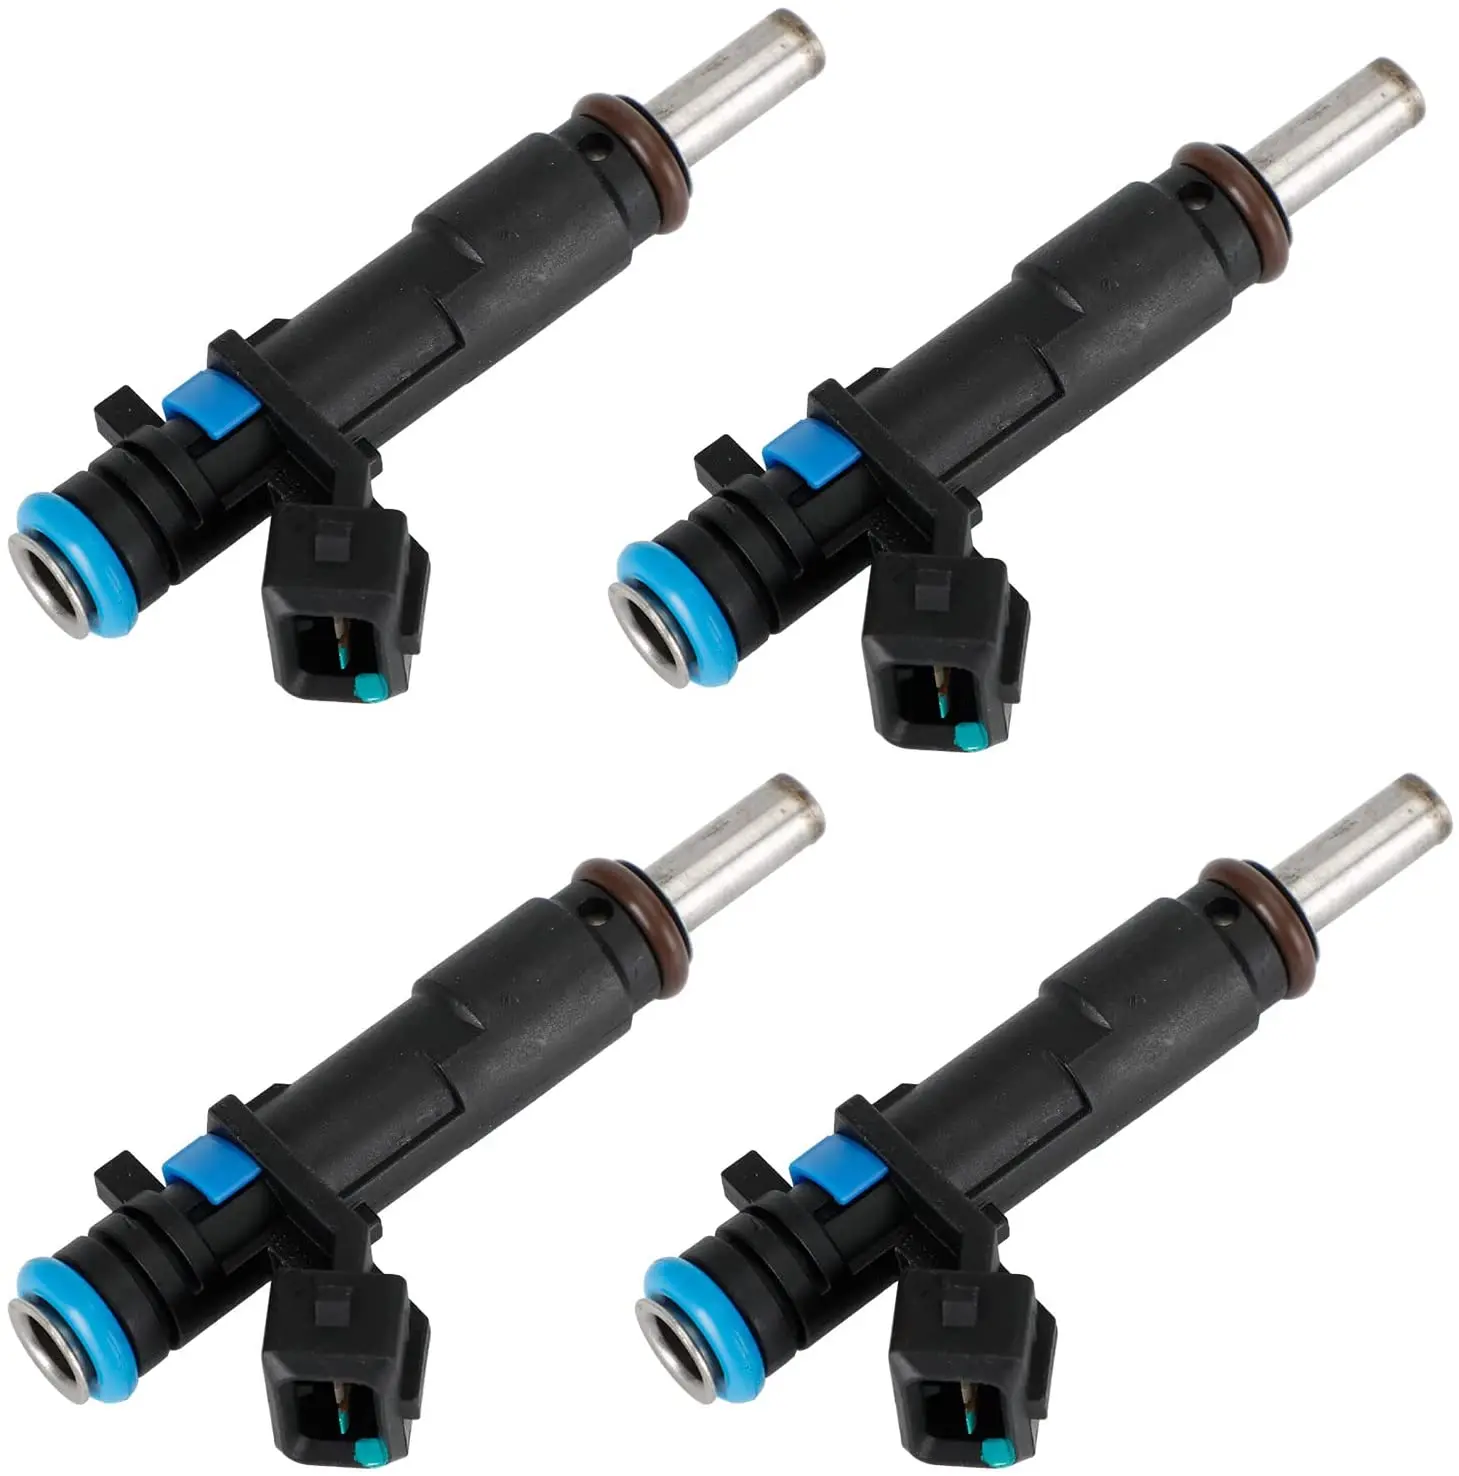 

1/4 Pcs Fuel Injector Nozzle 55570284 For Chevrolet Cruze Sonic 1.8L L4 FJ1153 217-3433 2173433